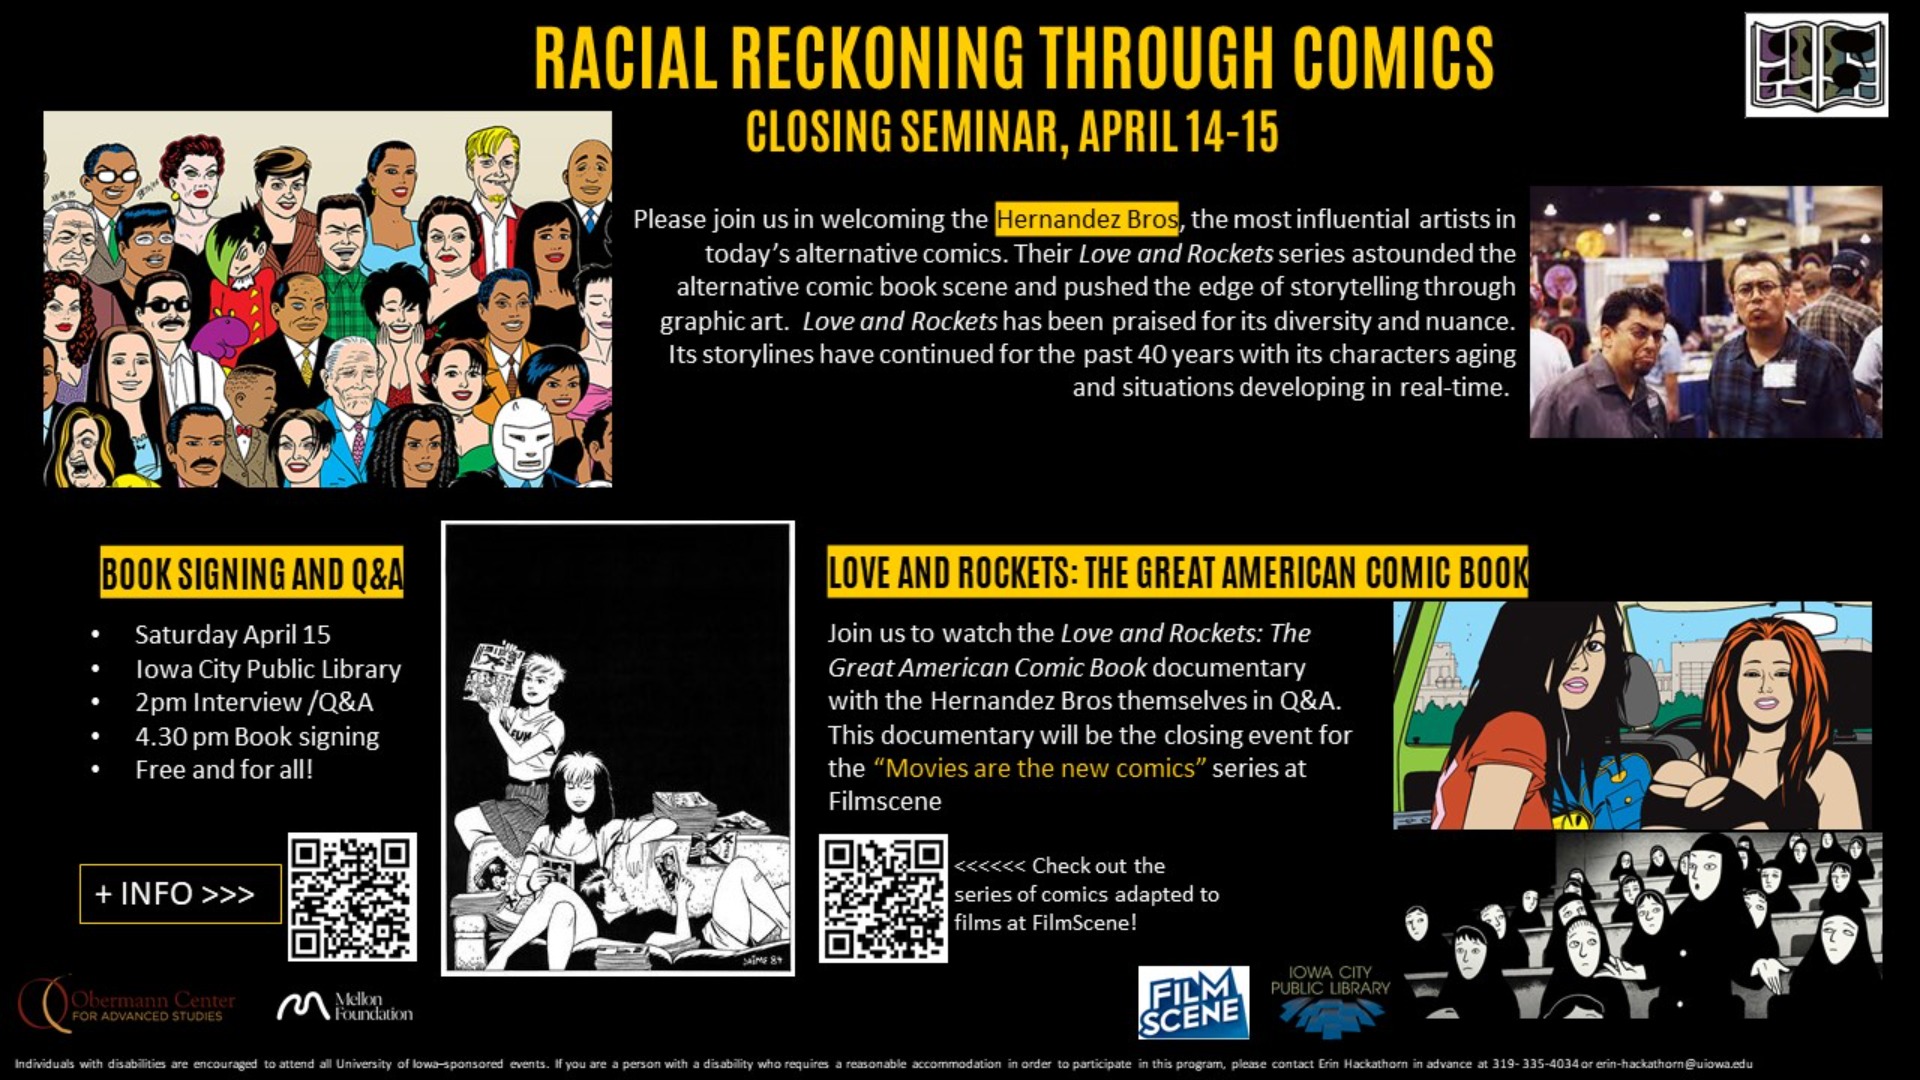 Racial Reckoning through Comics event